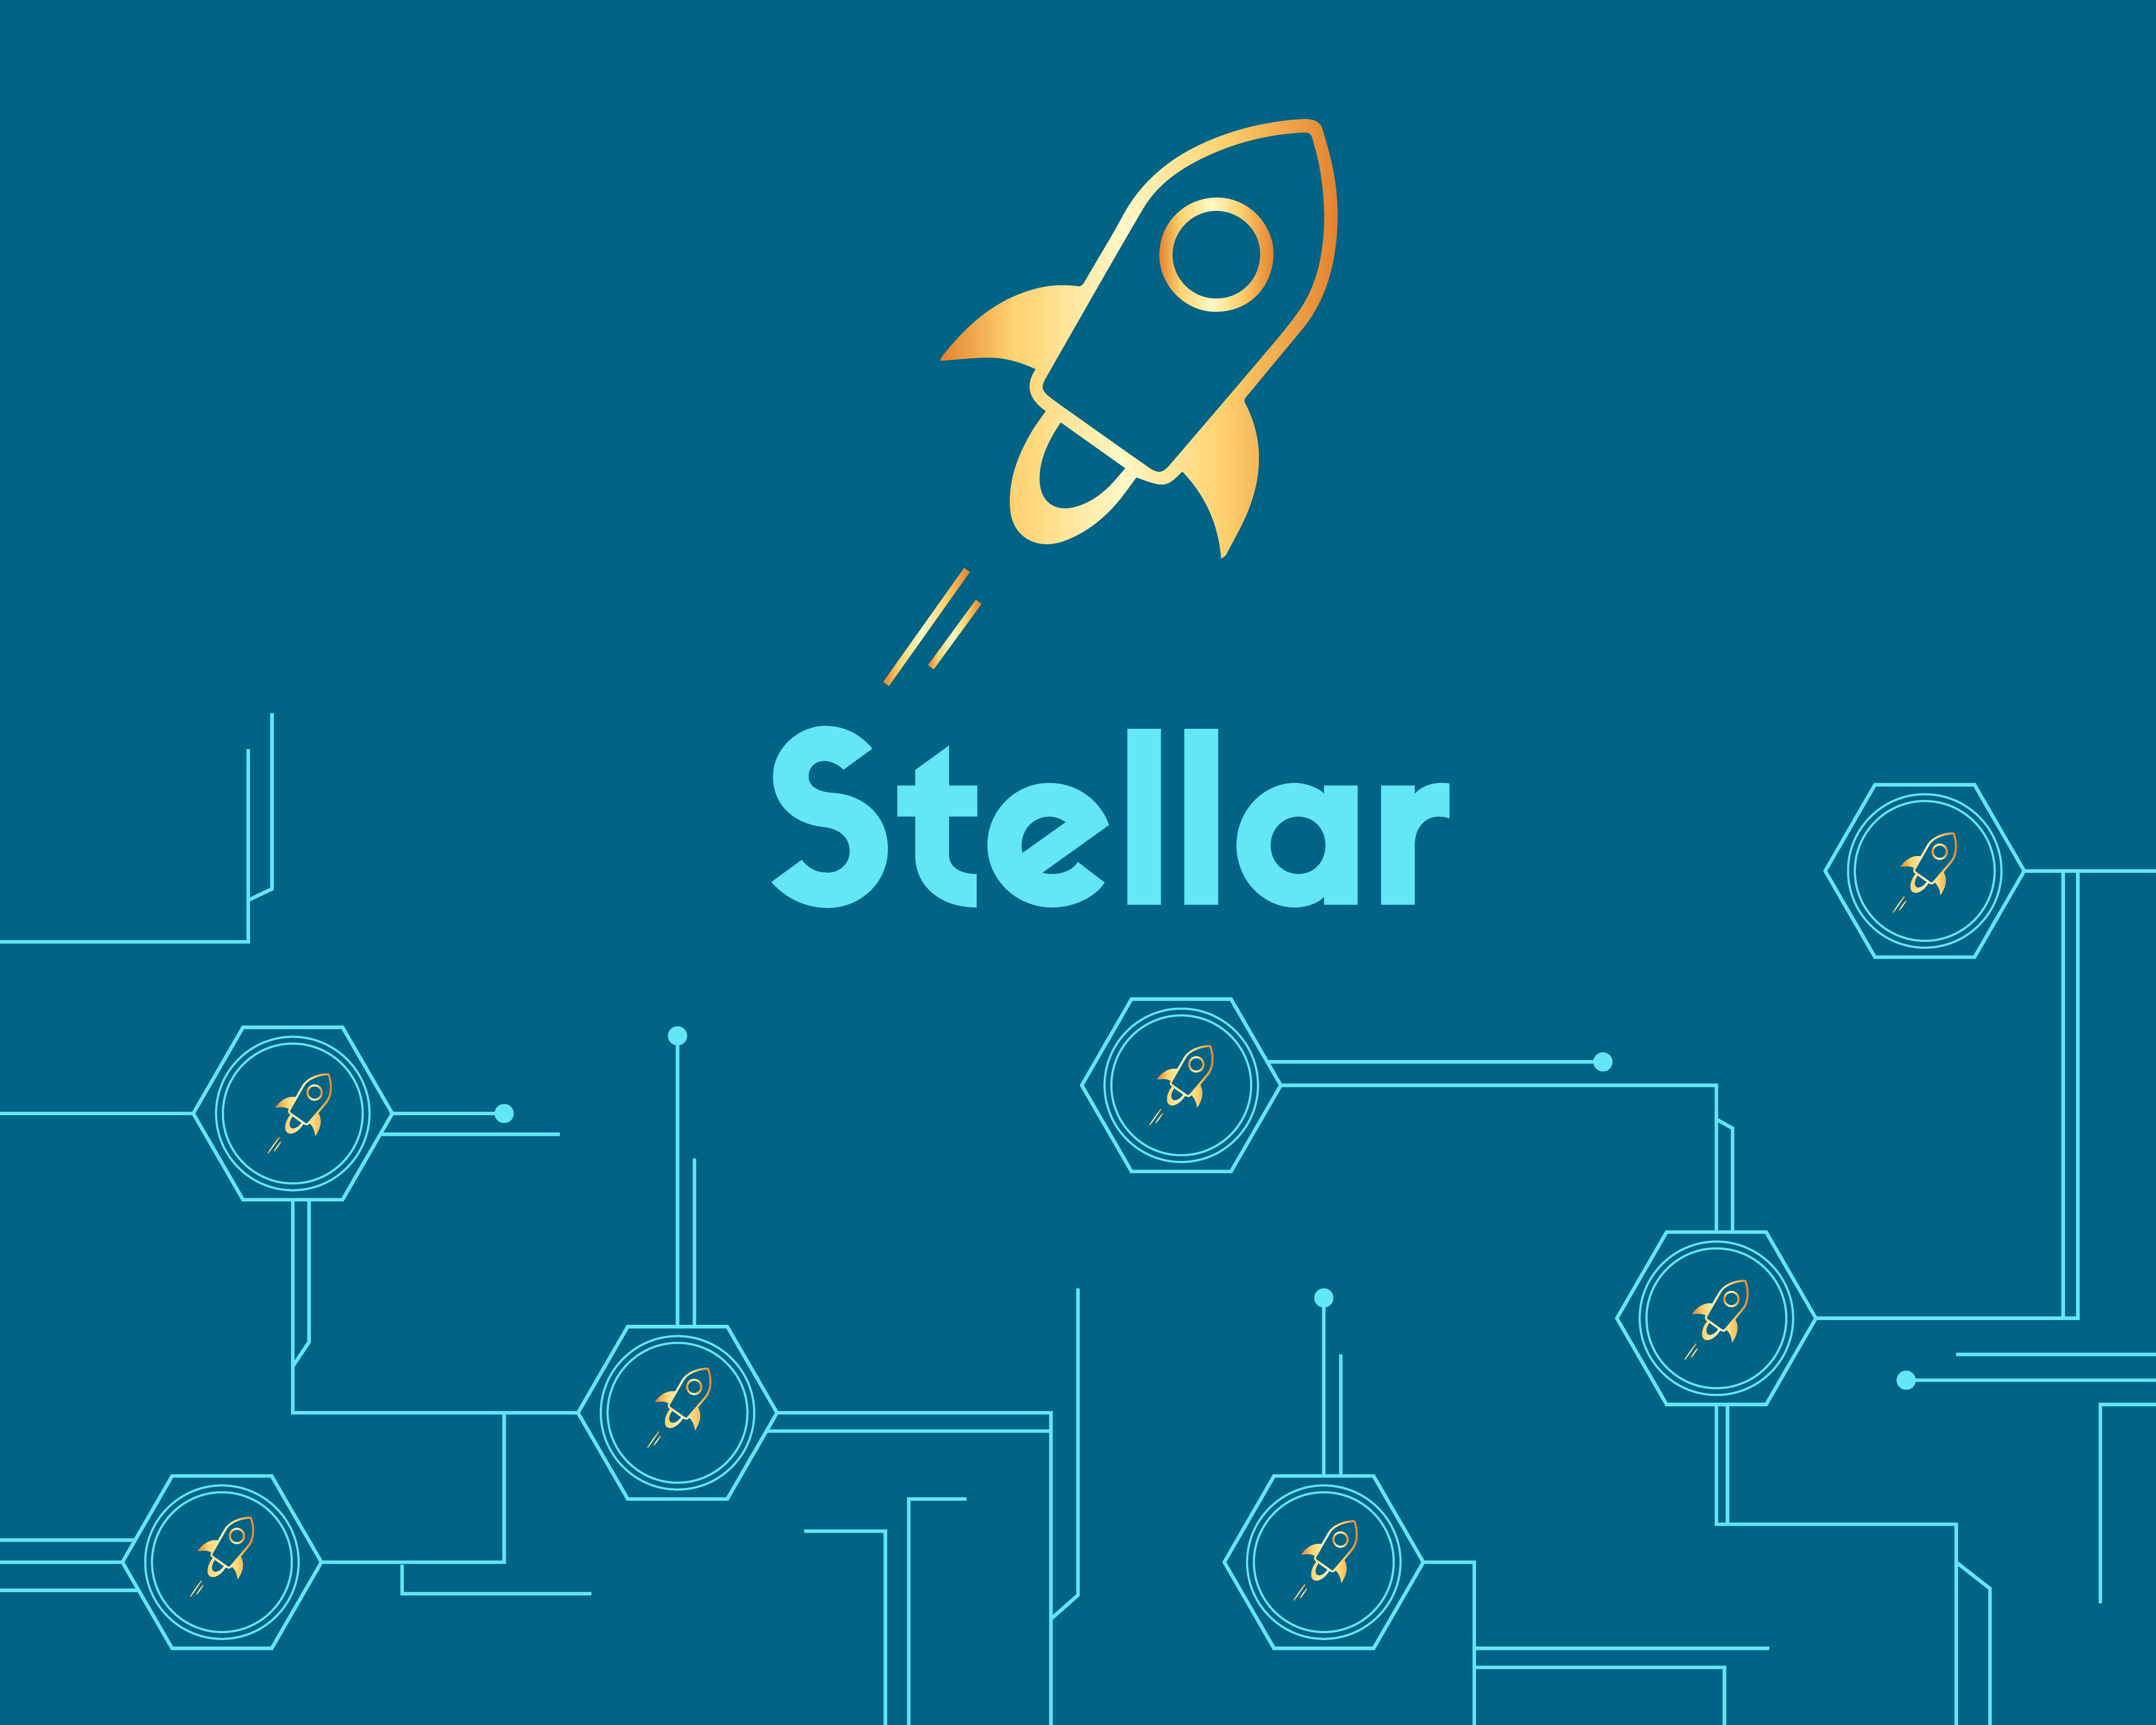 Pacchetto Stellar… analisi e opinione sul nuovo prodotto